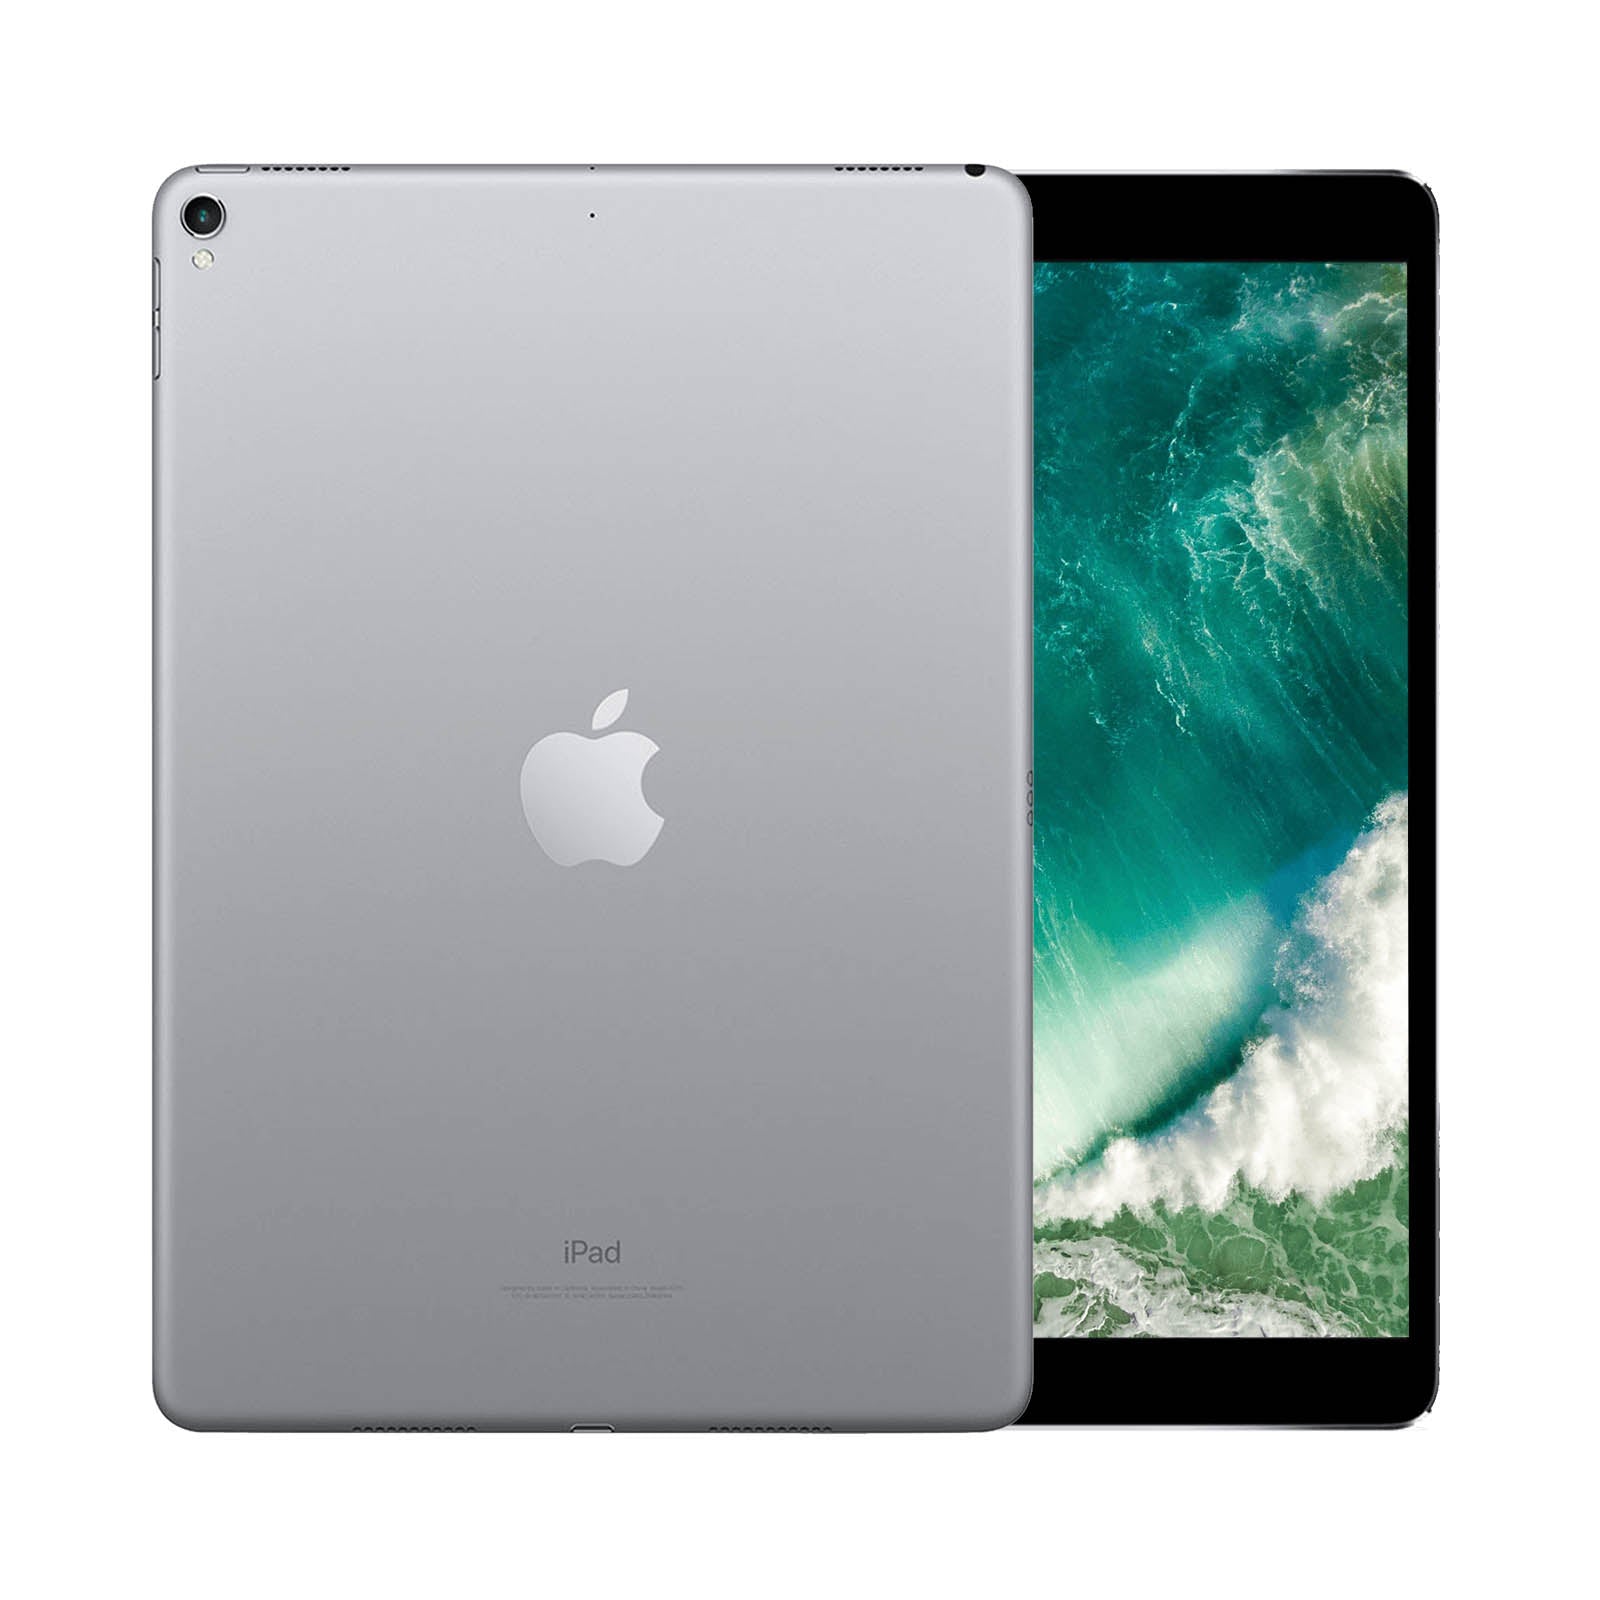 iPad Pro 10.5 Inch 64GB WiFi Space Grau Makellos WiFi